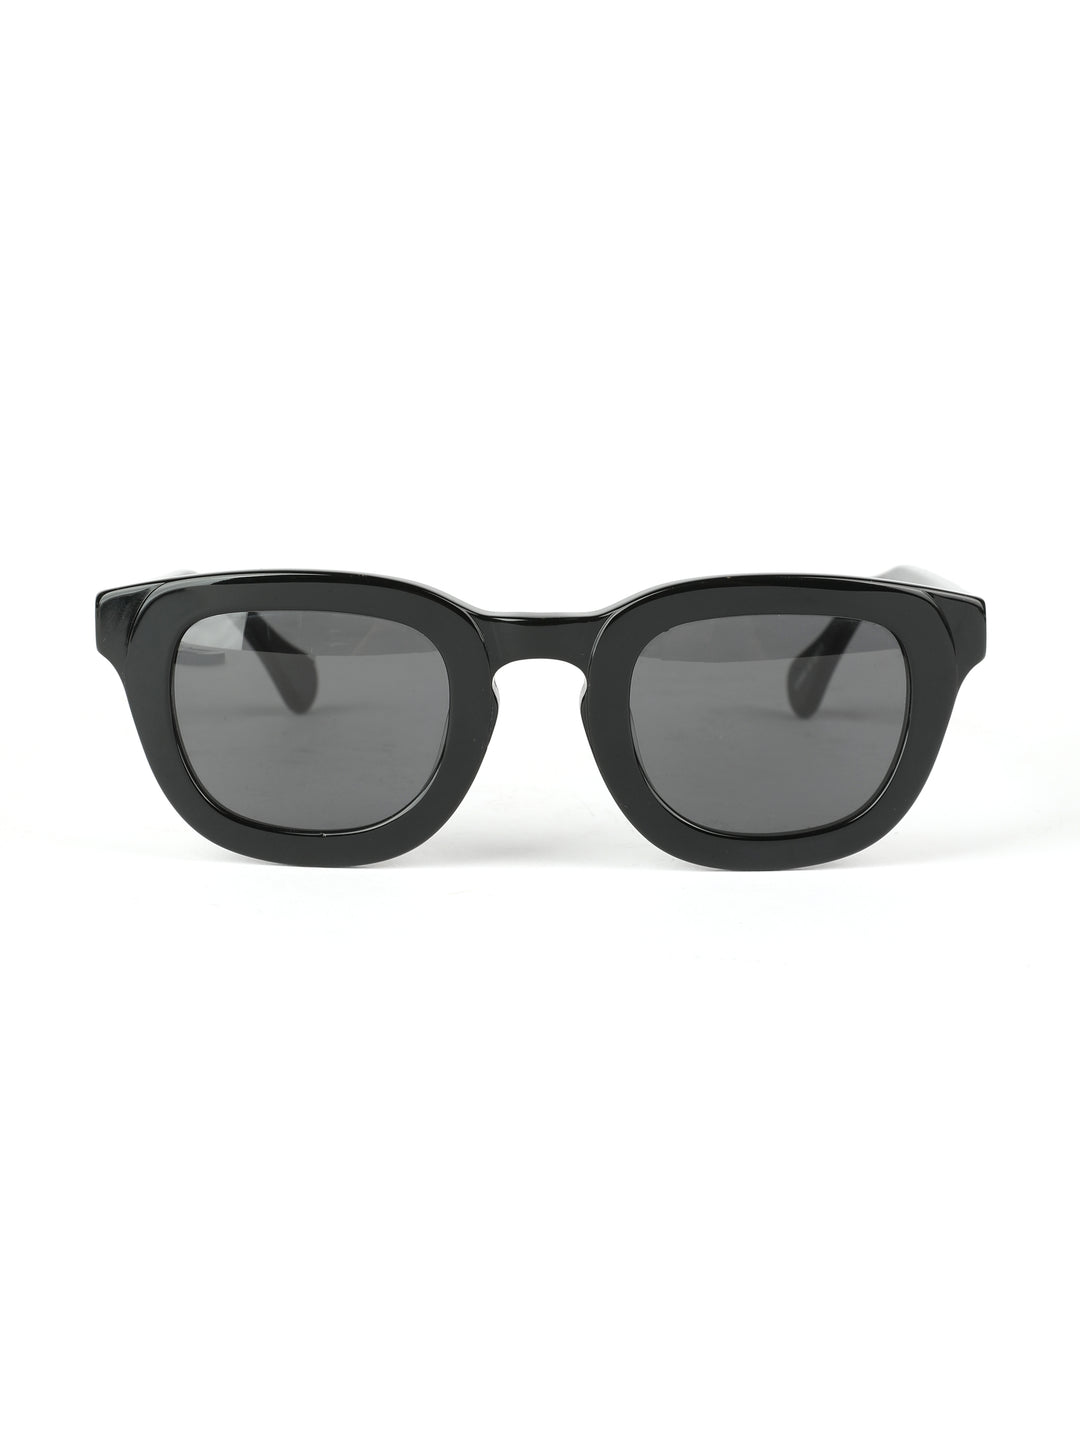 משקפי שמש שחורים לנשים See You No.4 Black Sunglasses 